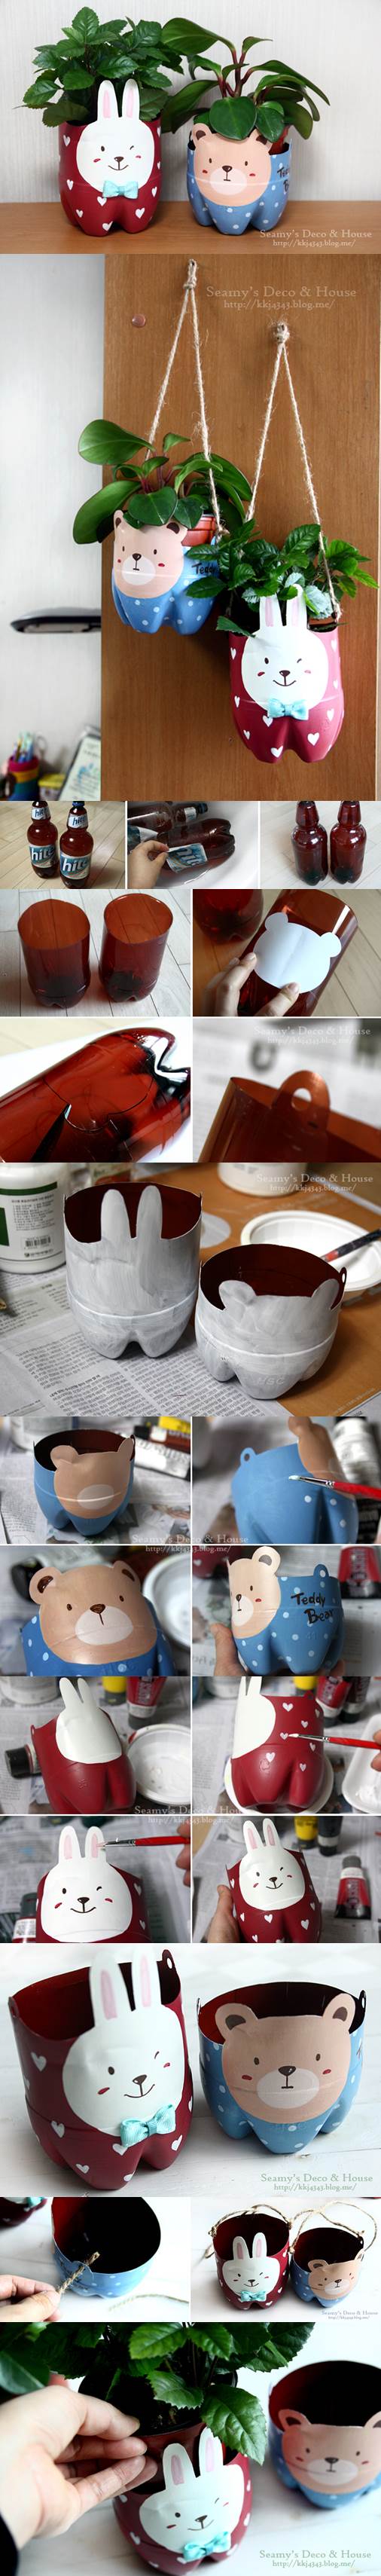 DIY Plastic Bottle Pet Pots 2